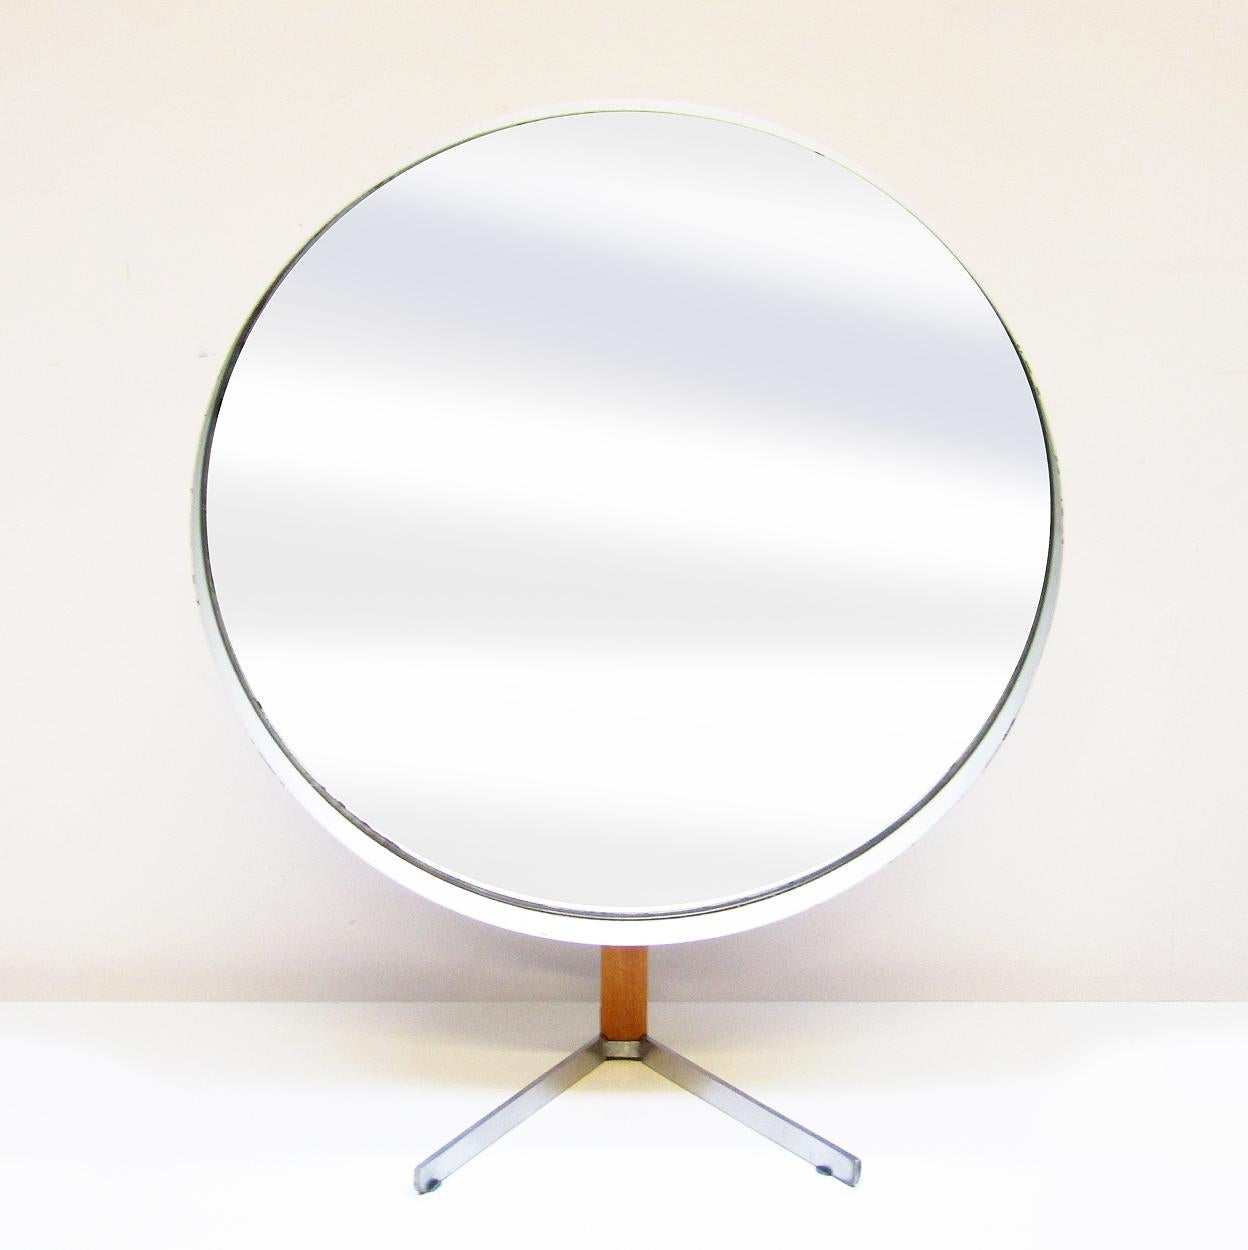 Ein großer, runder, gegliederter Tischspiegel aus den 1960er Jahren von Robert Welch für Durlston Designs.

Der Spiegel hat einen Durchmesser von 36 cm (14